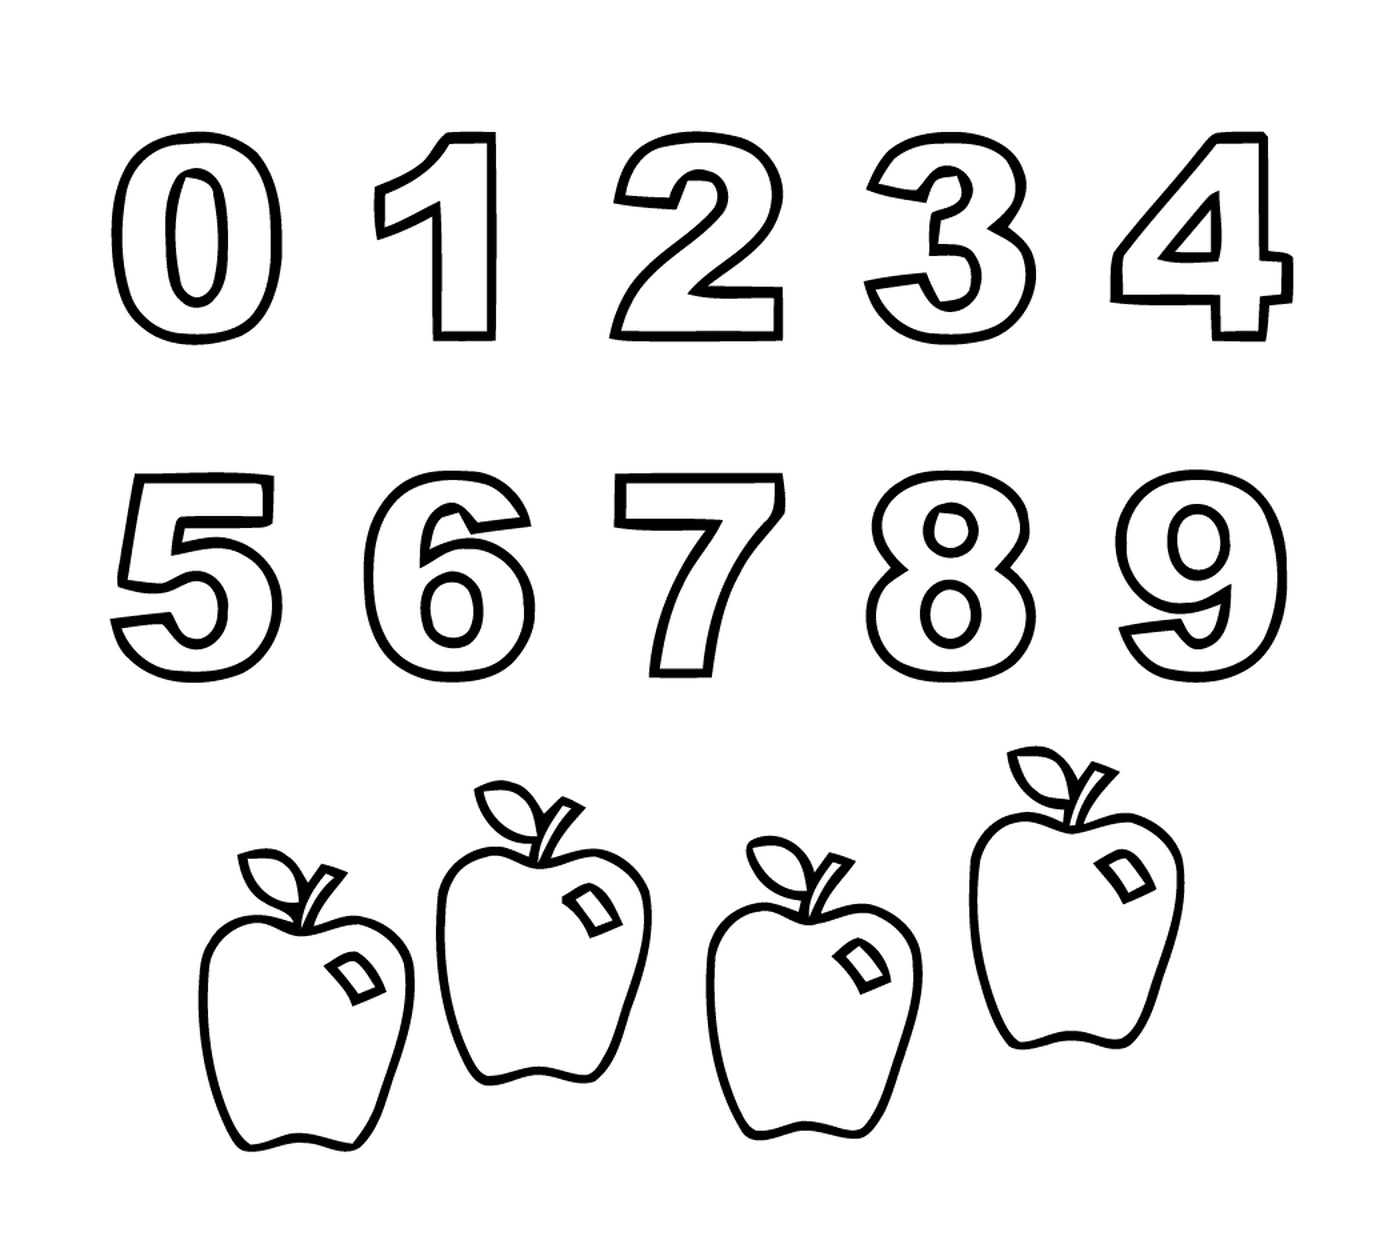  Números de zero a nove para crianças com maçãs 